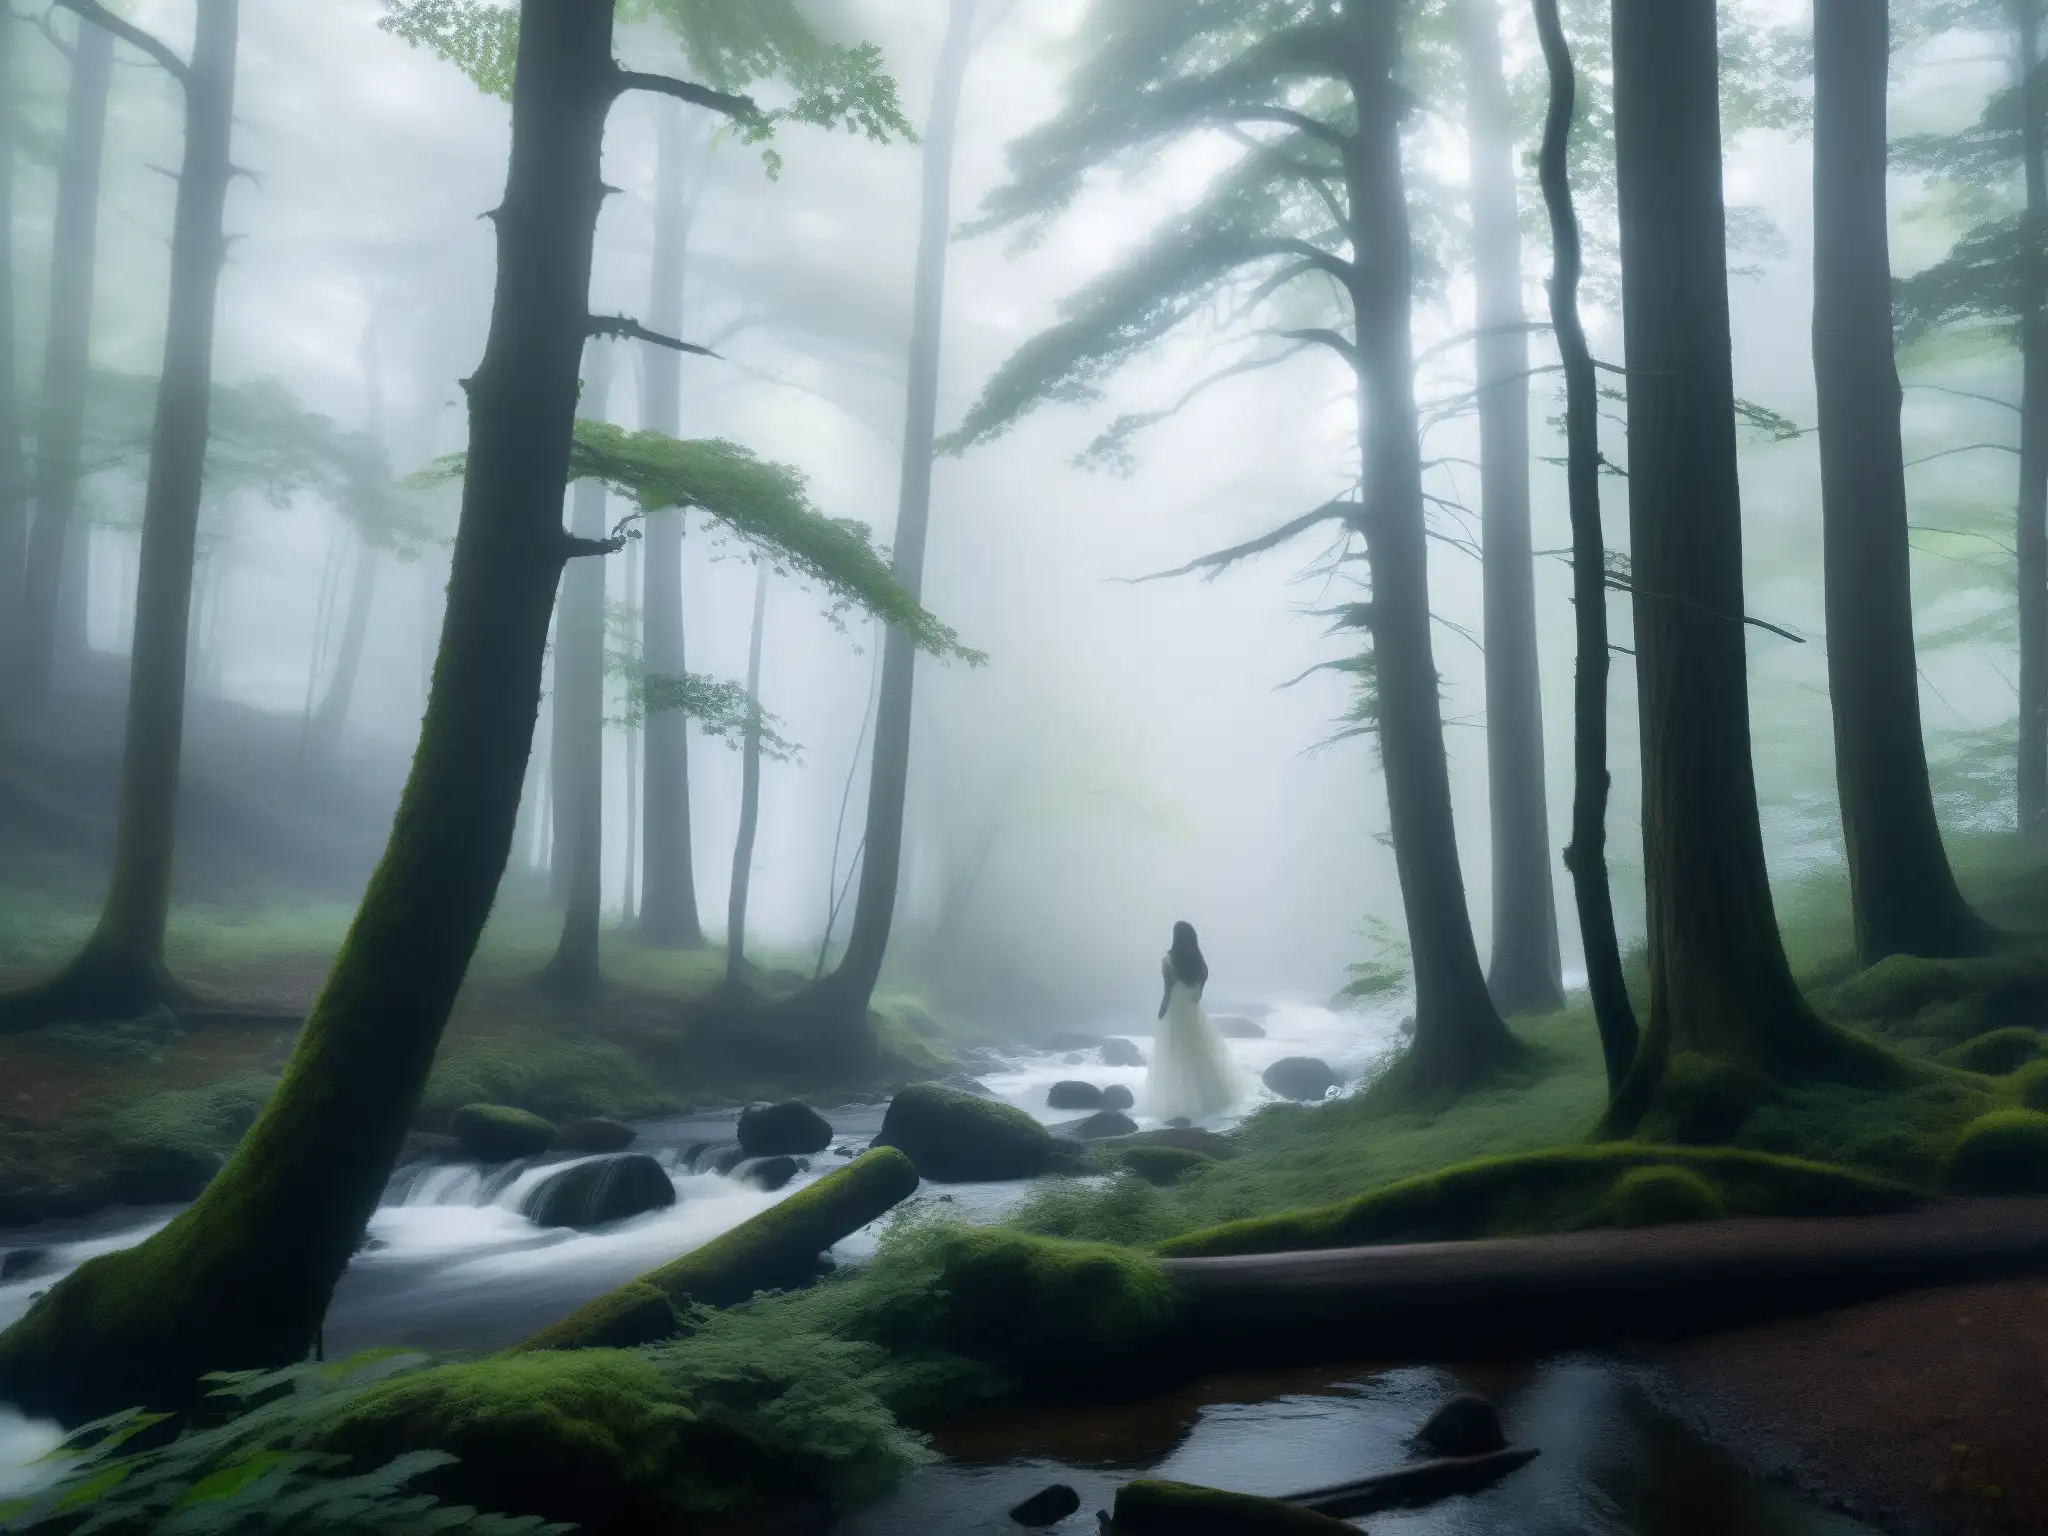 La leyenda de la mujer blanca Appalachia en el bosque brumoso con árboles imponentes y una figura etérea junto al arroyo